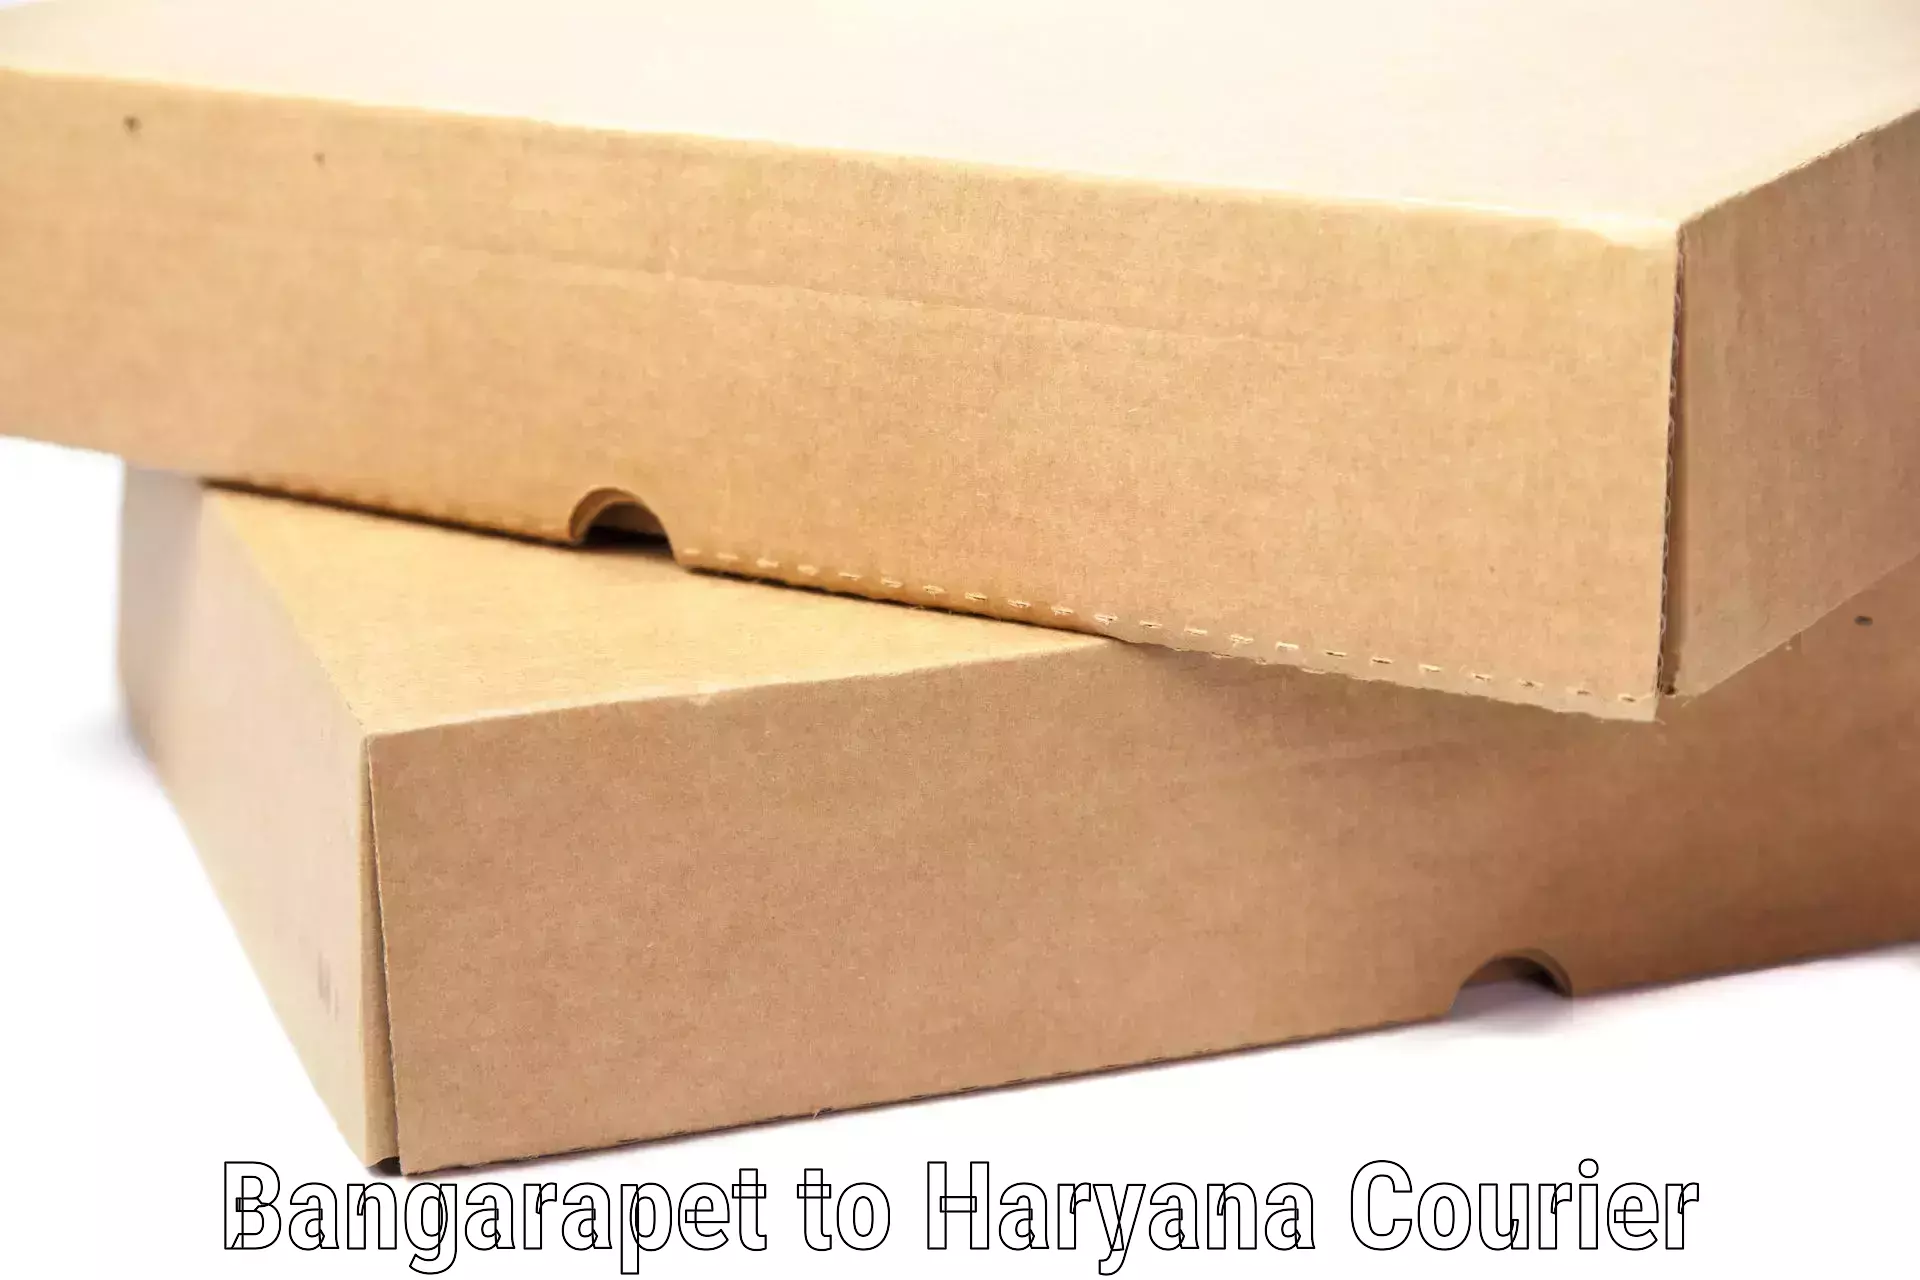 Single item baggage courier Bangarapet to Haryana